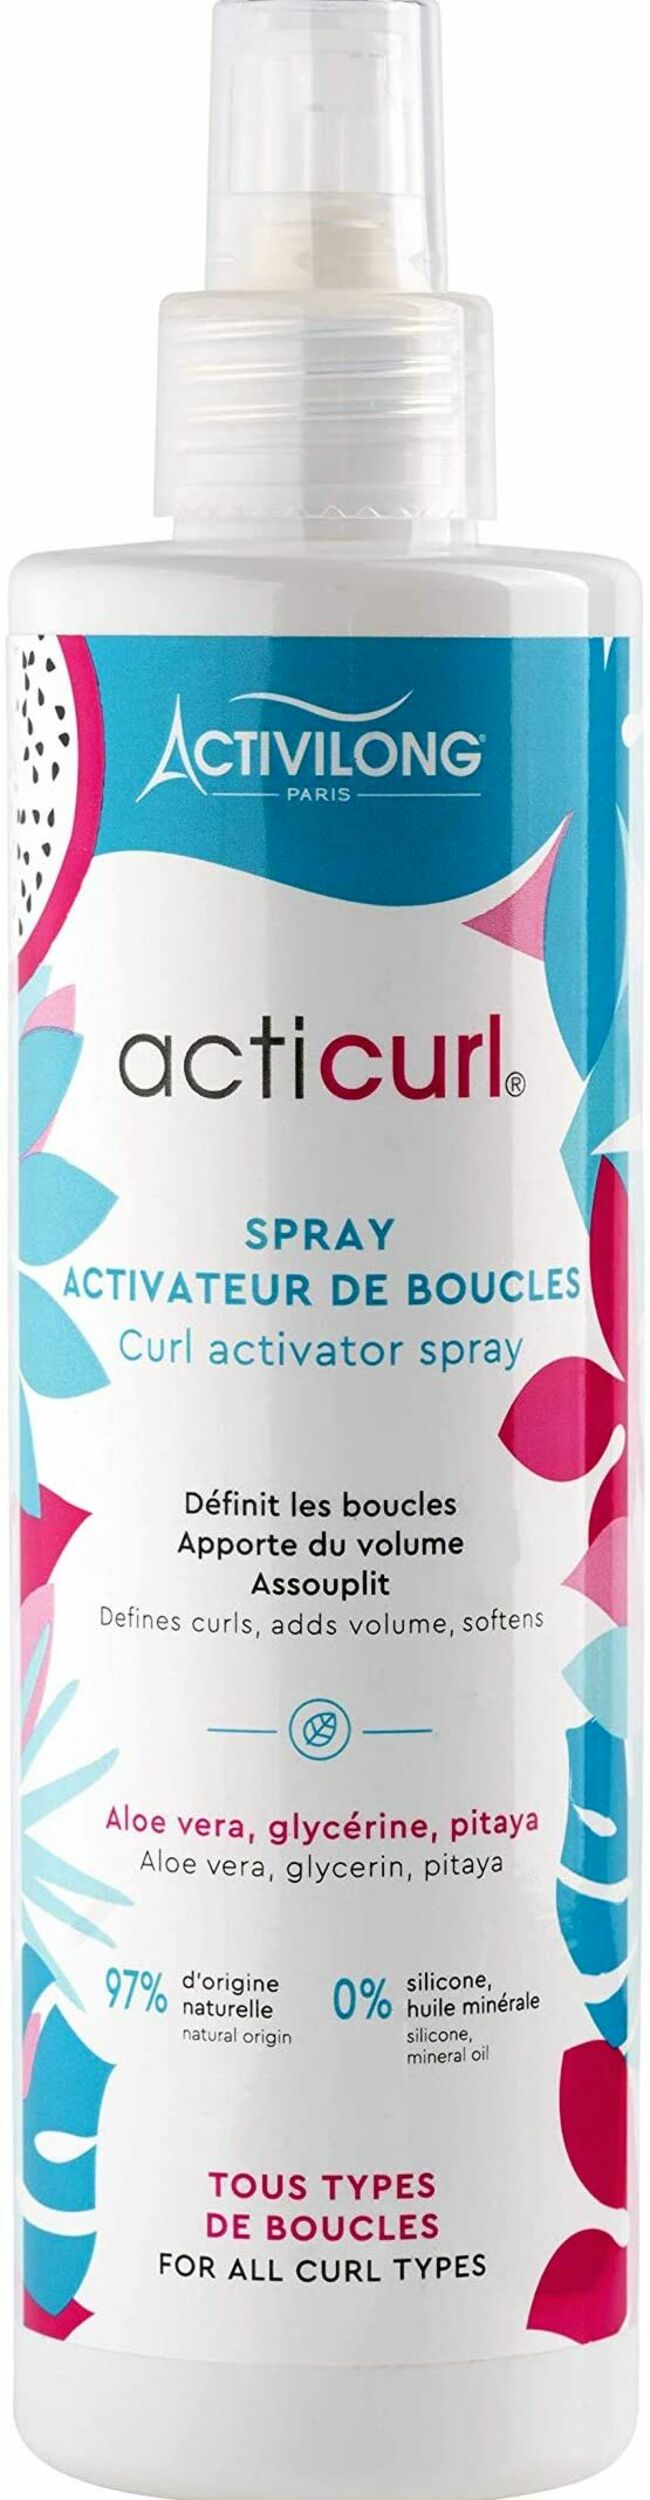 Spray activateur de boucles Acticurl, Activilong, 8,90€.